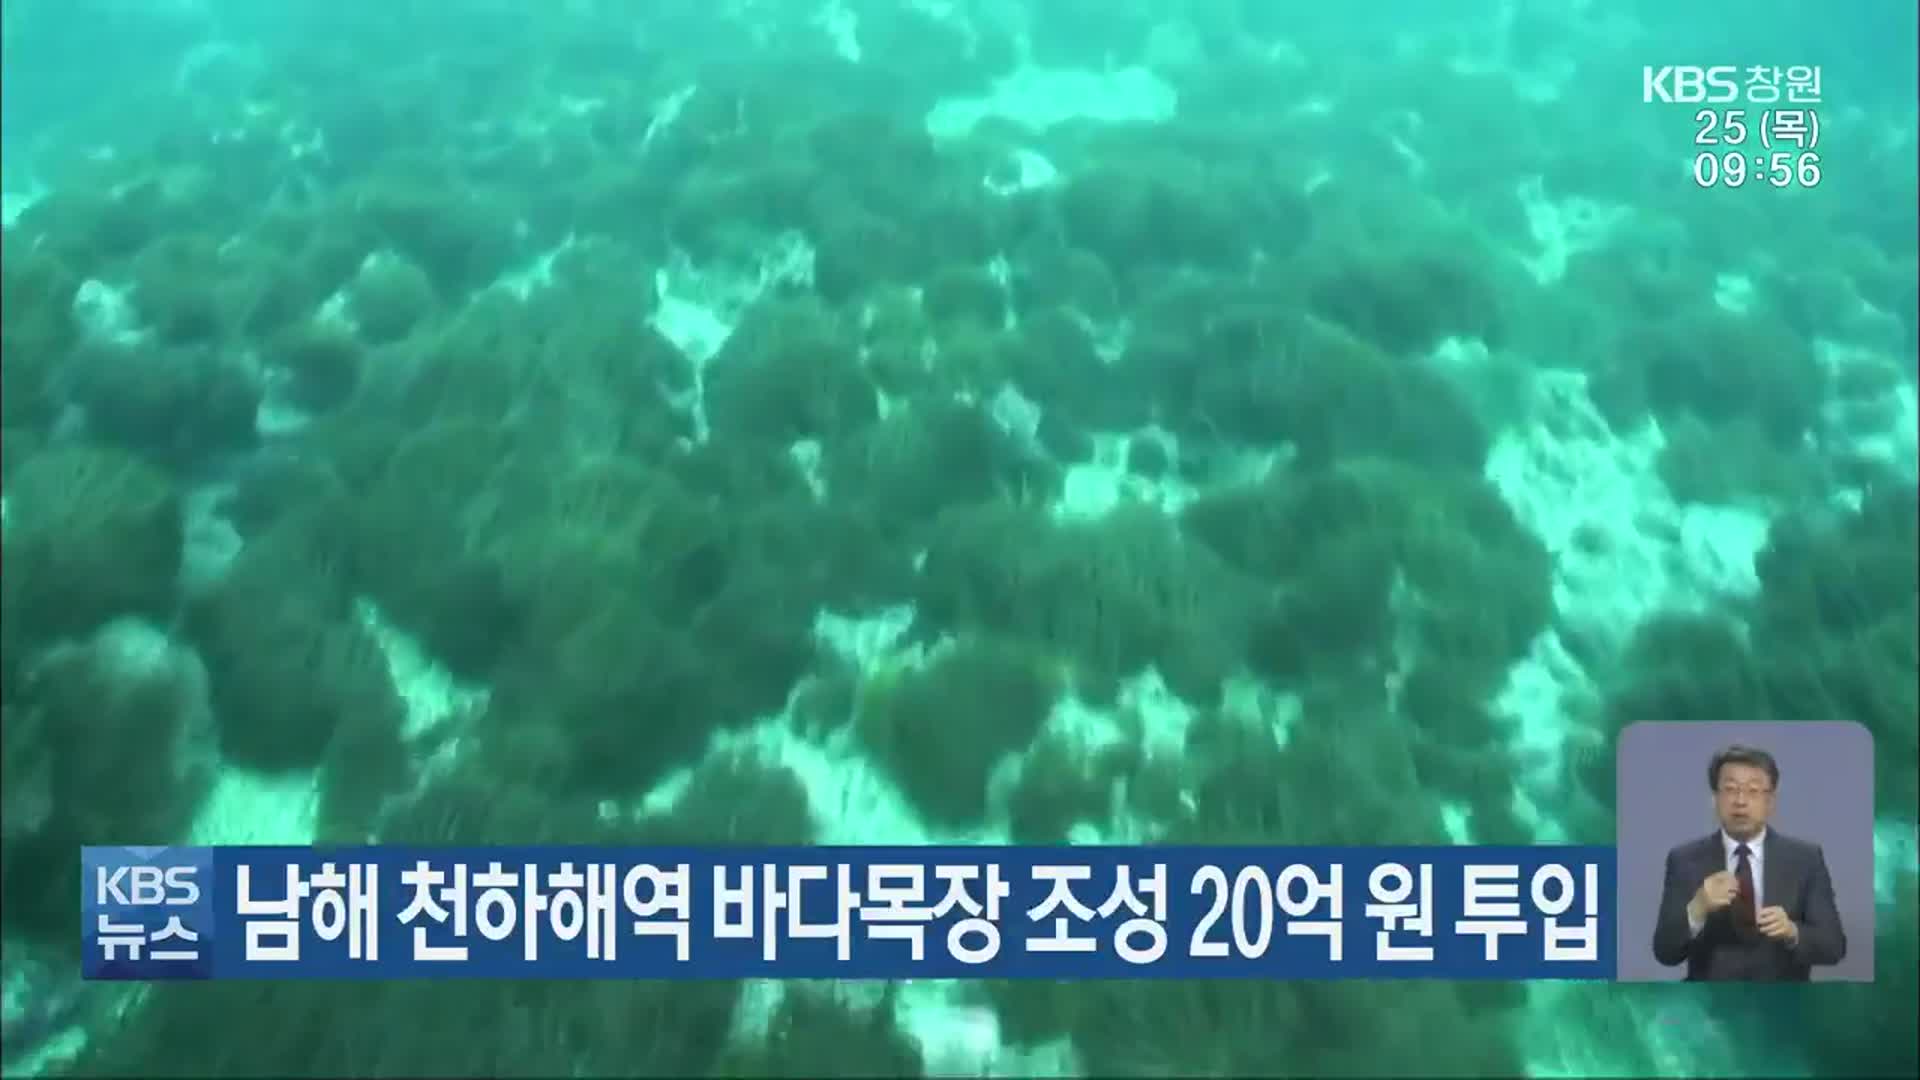 남해 천하해역 바다목장 조성 20억 원 투입